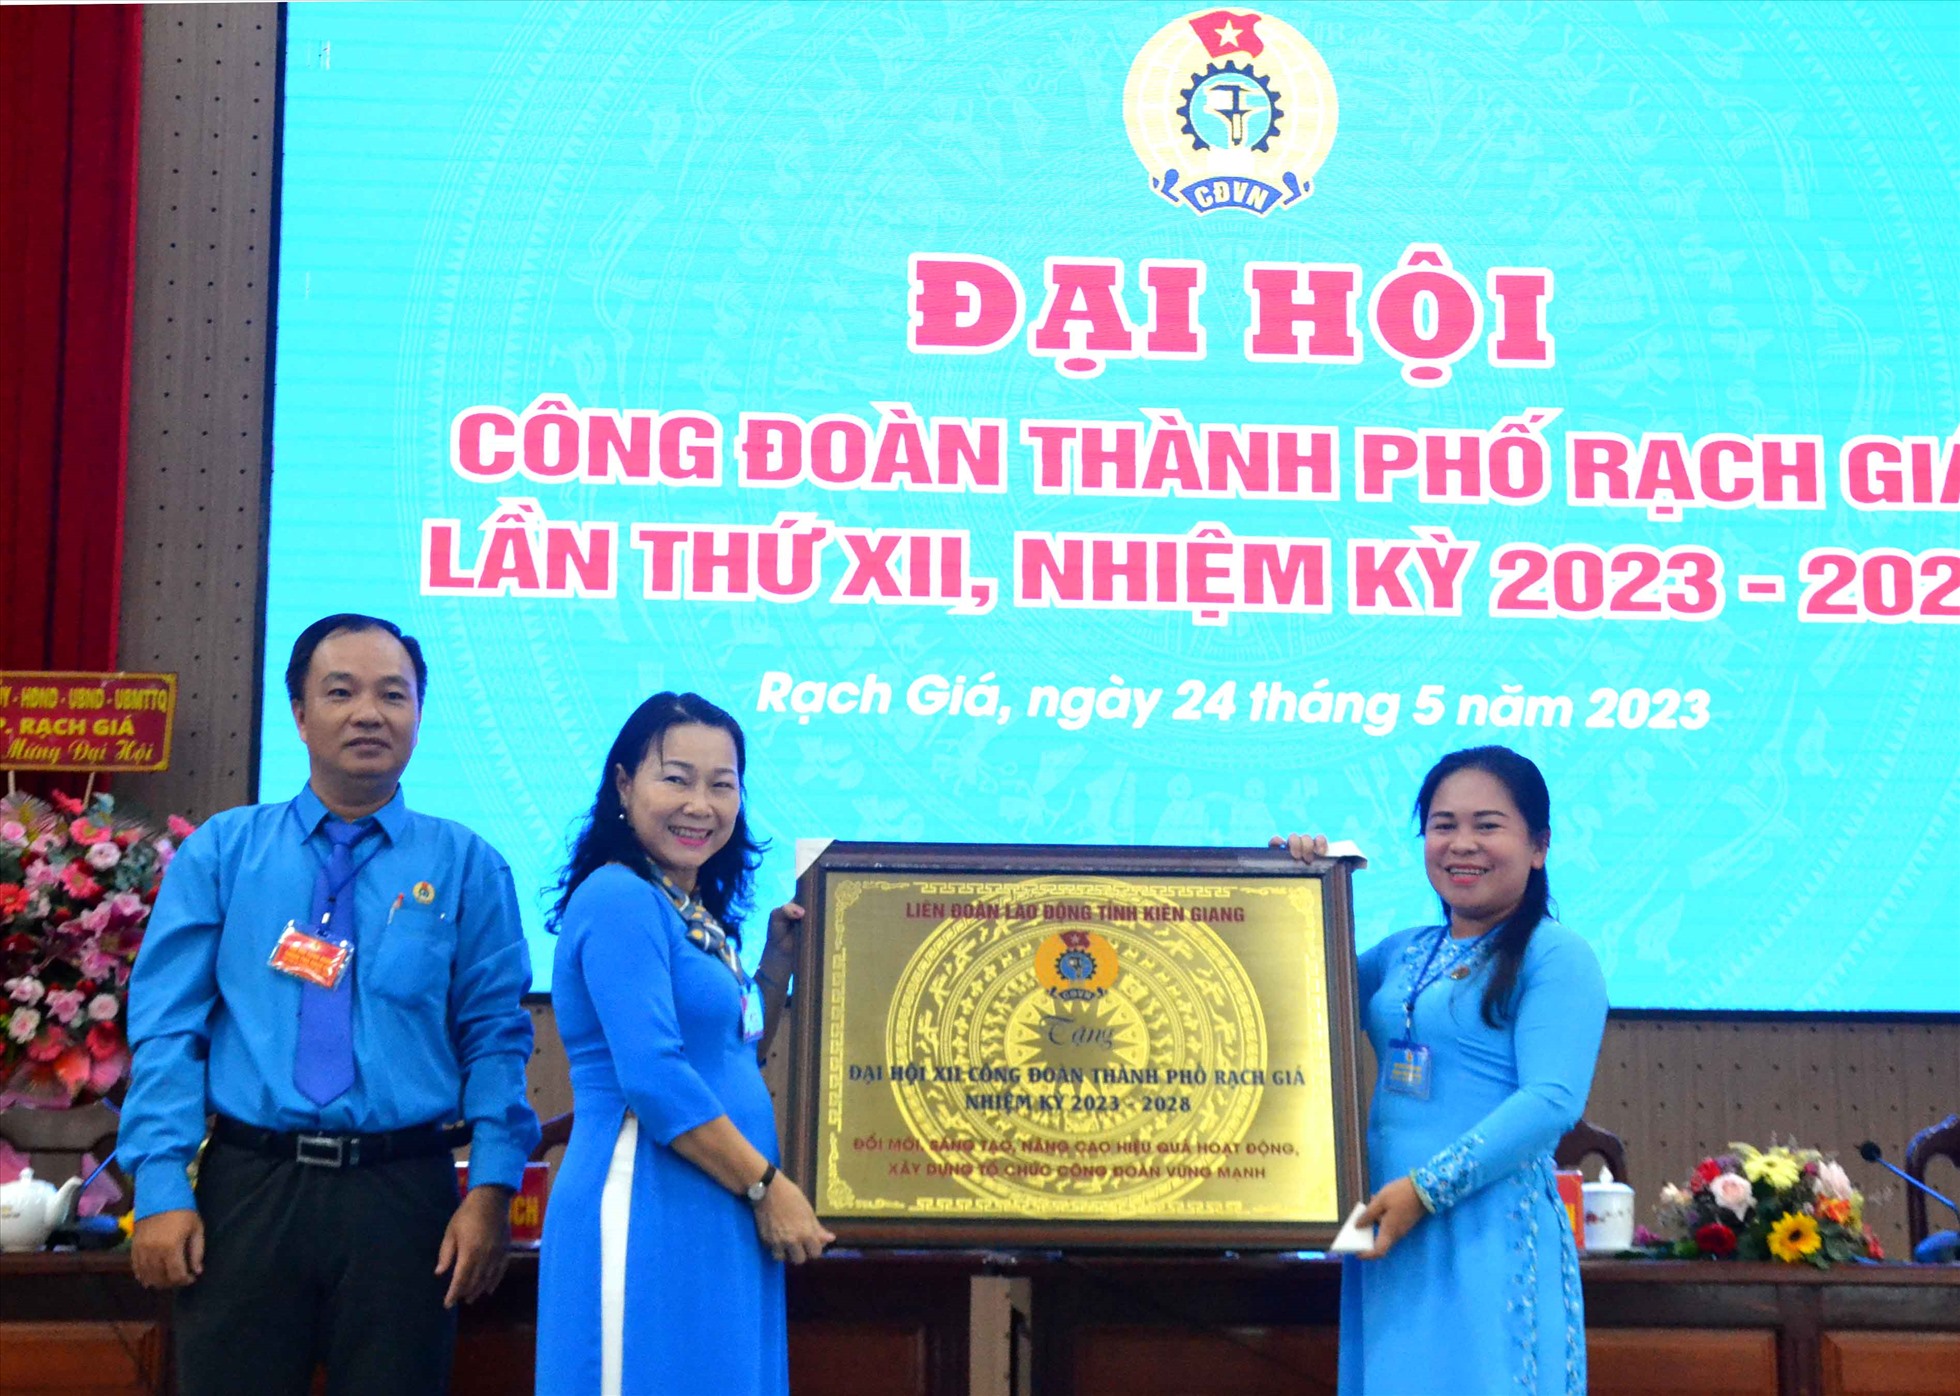 Chủ tịch LĐLĐ tỉnh Kiên Giang Trương Thanh Thuý tặng bức trướng cho Đại hội Công đoàn TP Rạch Giá lần thứ XII. Ảnh: Lâm Điền